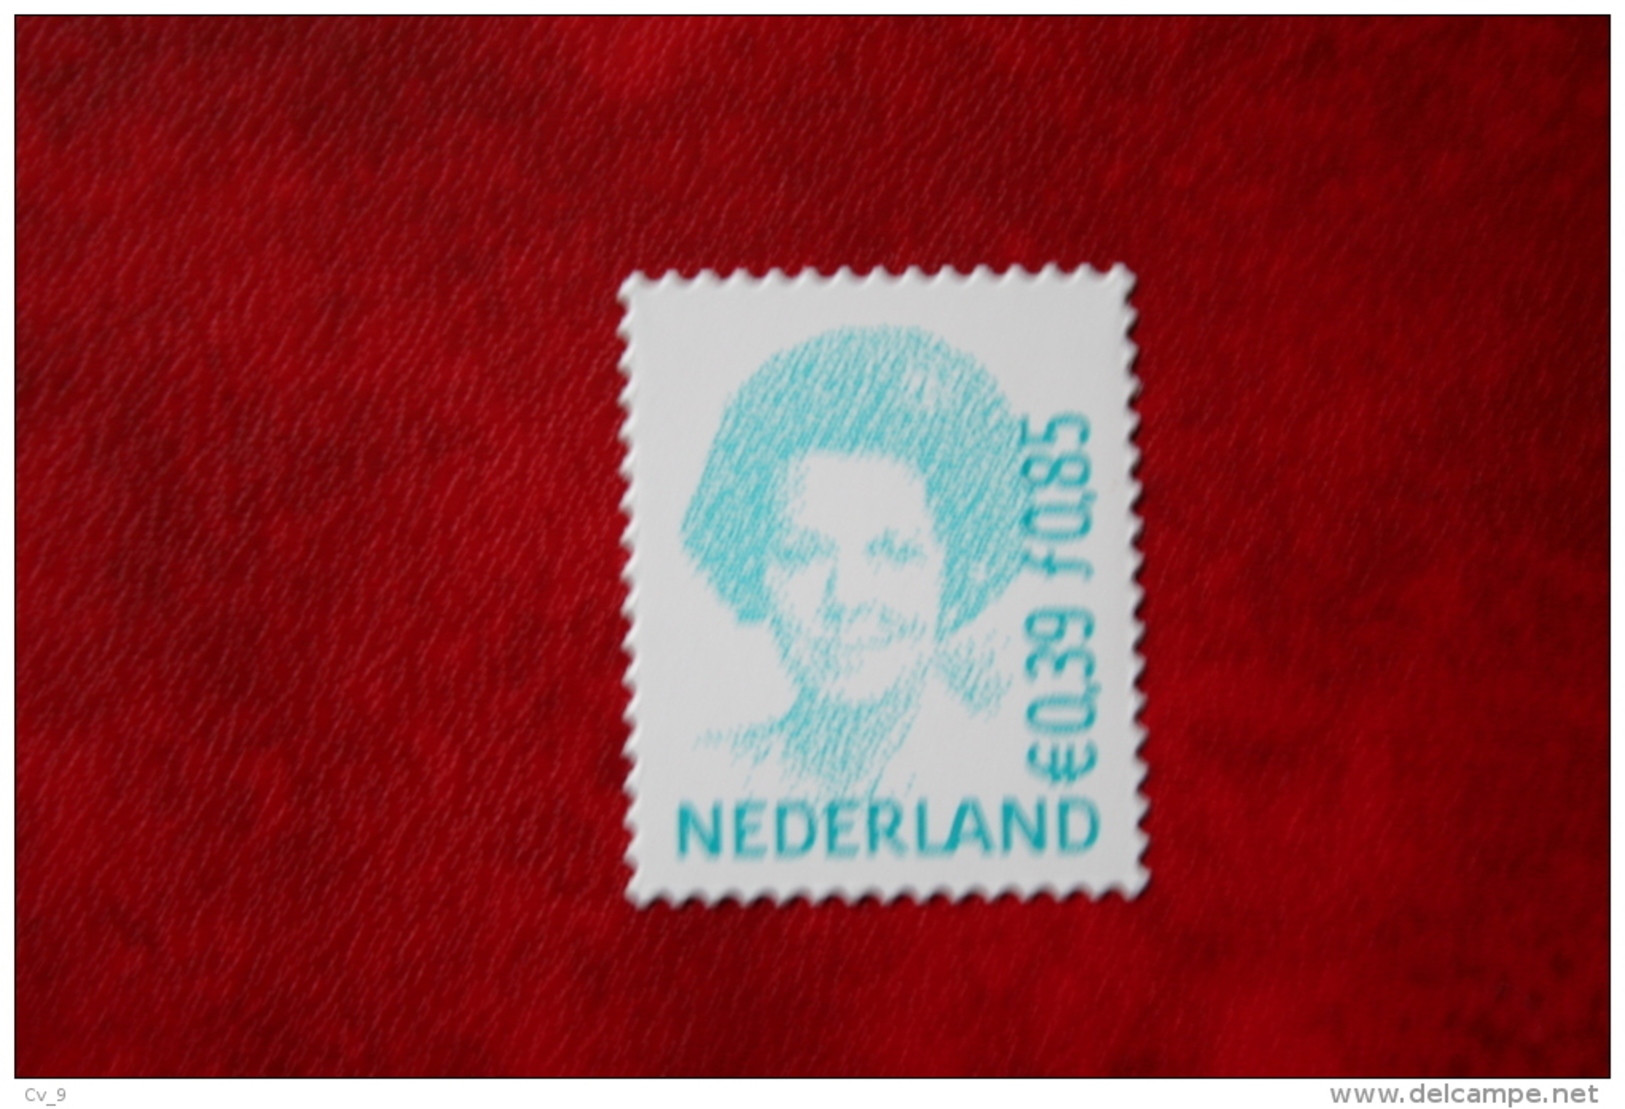 Beatrix 0,85 Gld 0,39 Euro Gestanst ; NVPH 1984 (Mi 1907) ; 2001 POSTFRIS / MNH ** NEDERLAND / NIEDERLANDE / NETHERLANDS - Ungebraucht